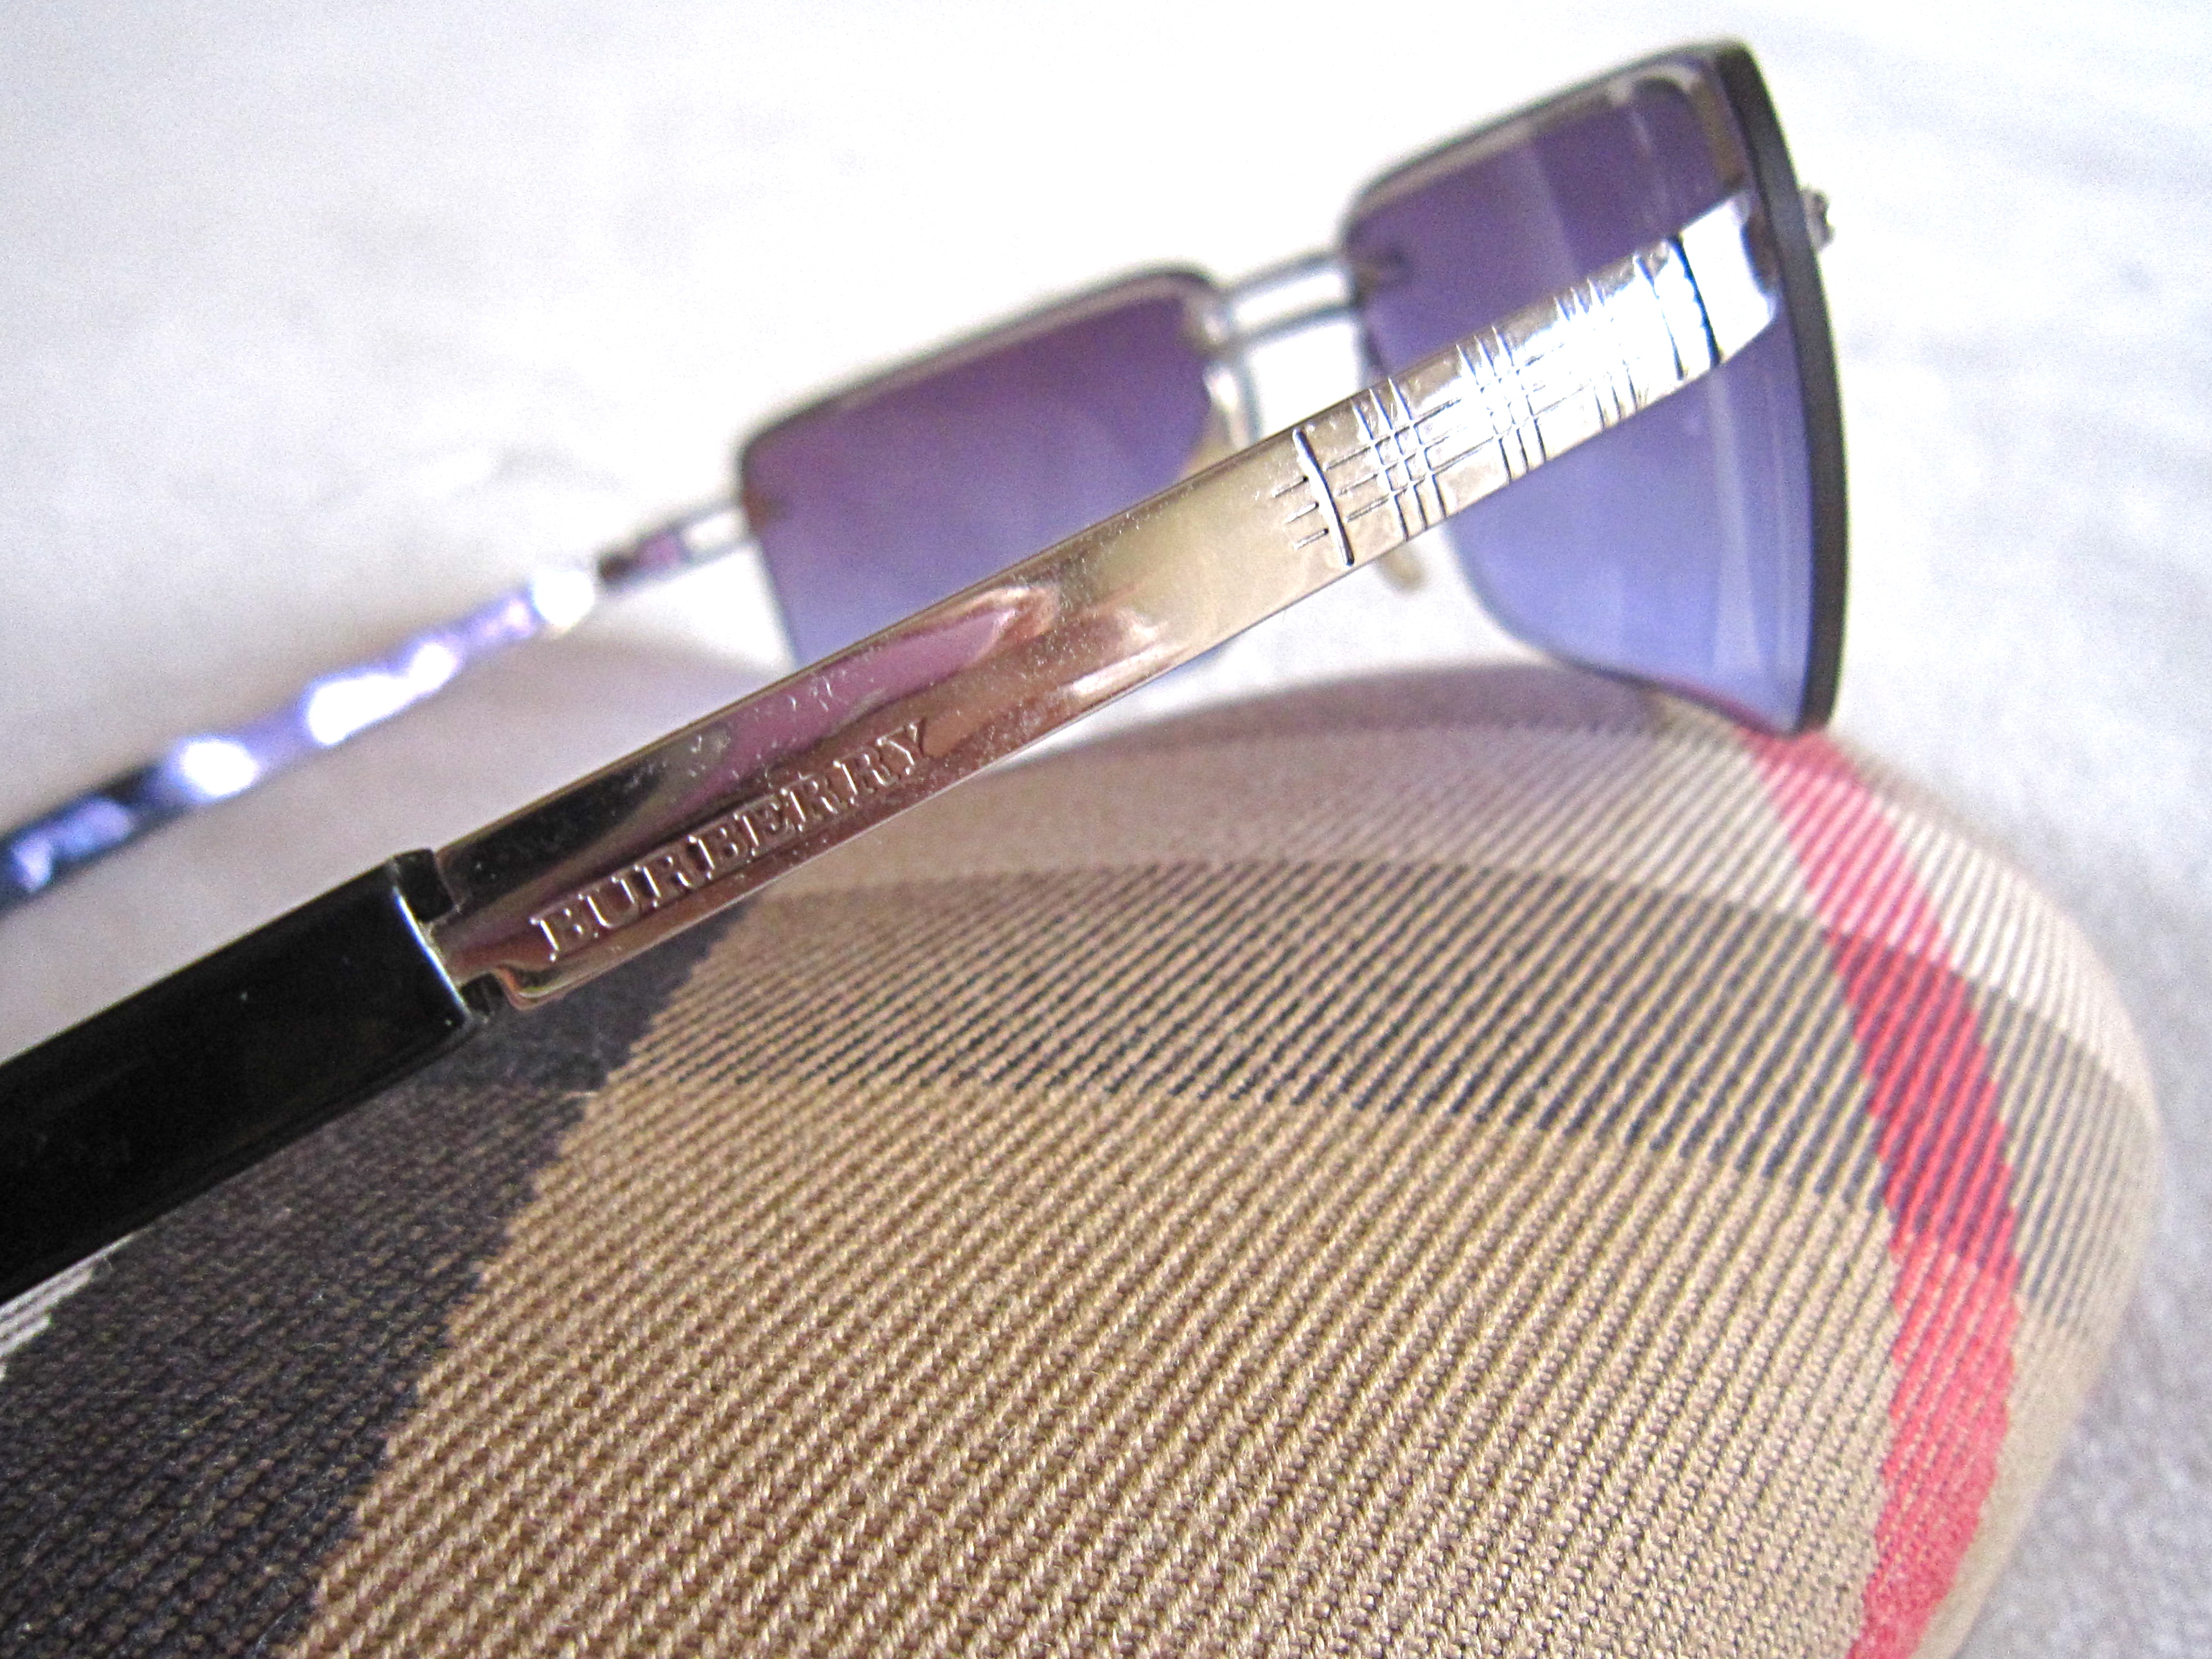 burberry safilo sunglasses